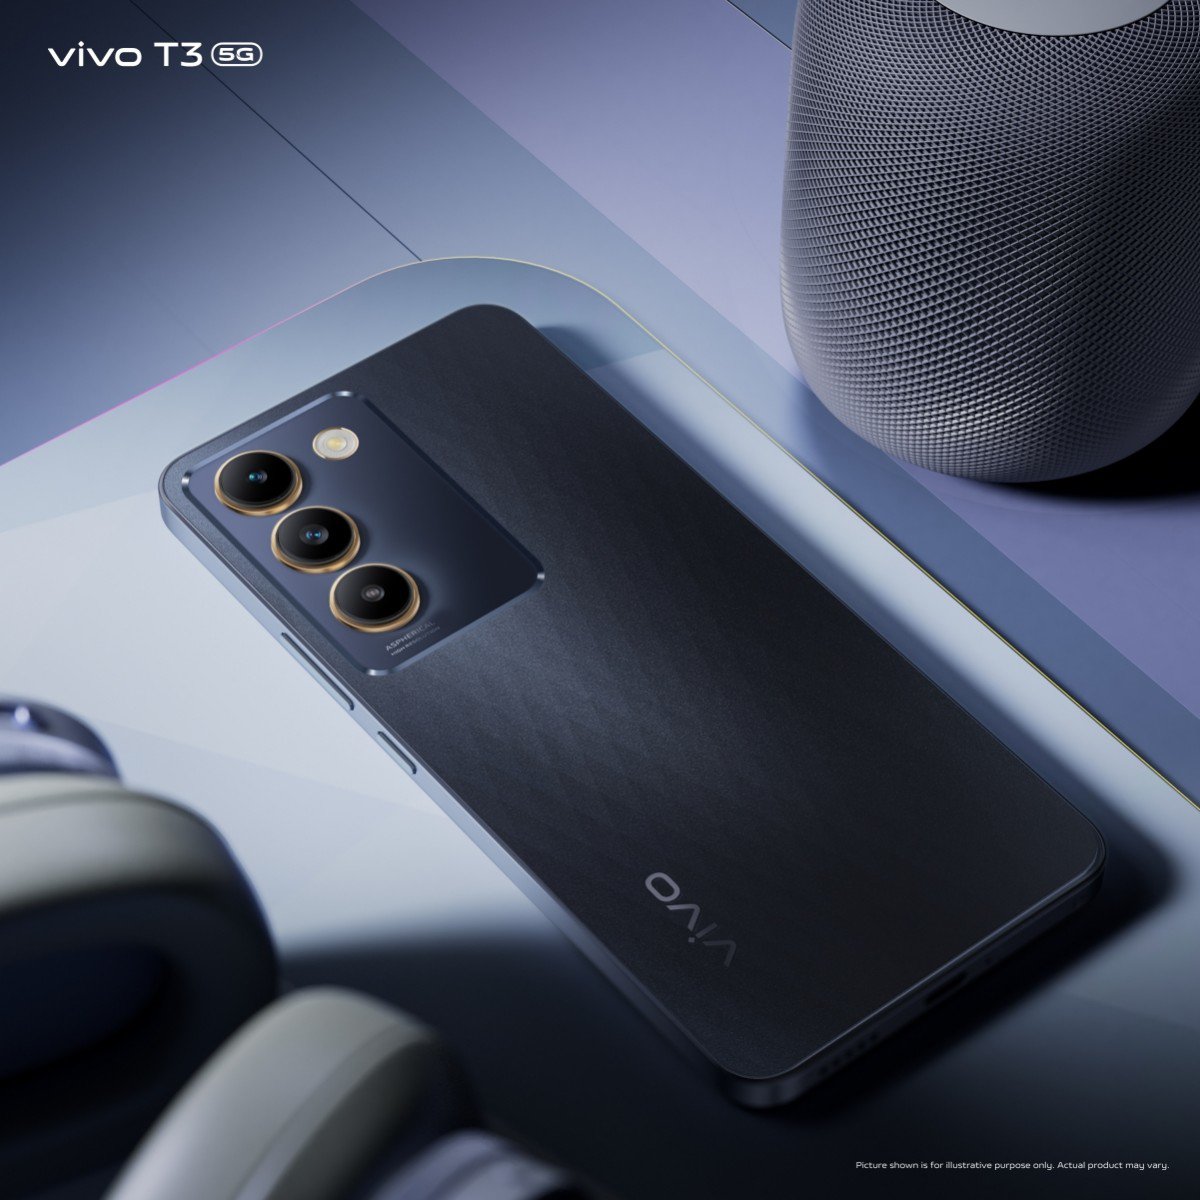 Ra mắt Vivo T3 với thiết kế hiện đại, giá dưới 6 triệu đồng - 1